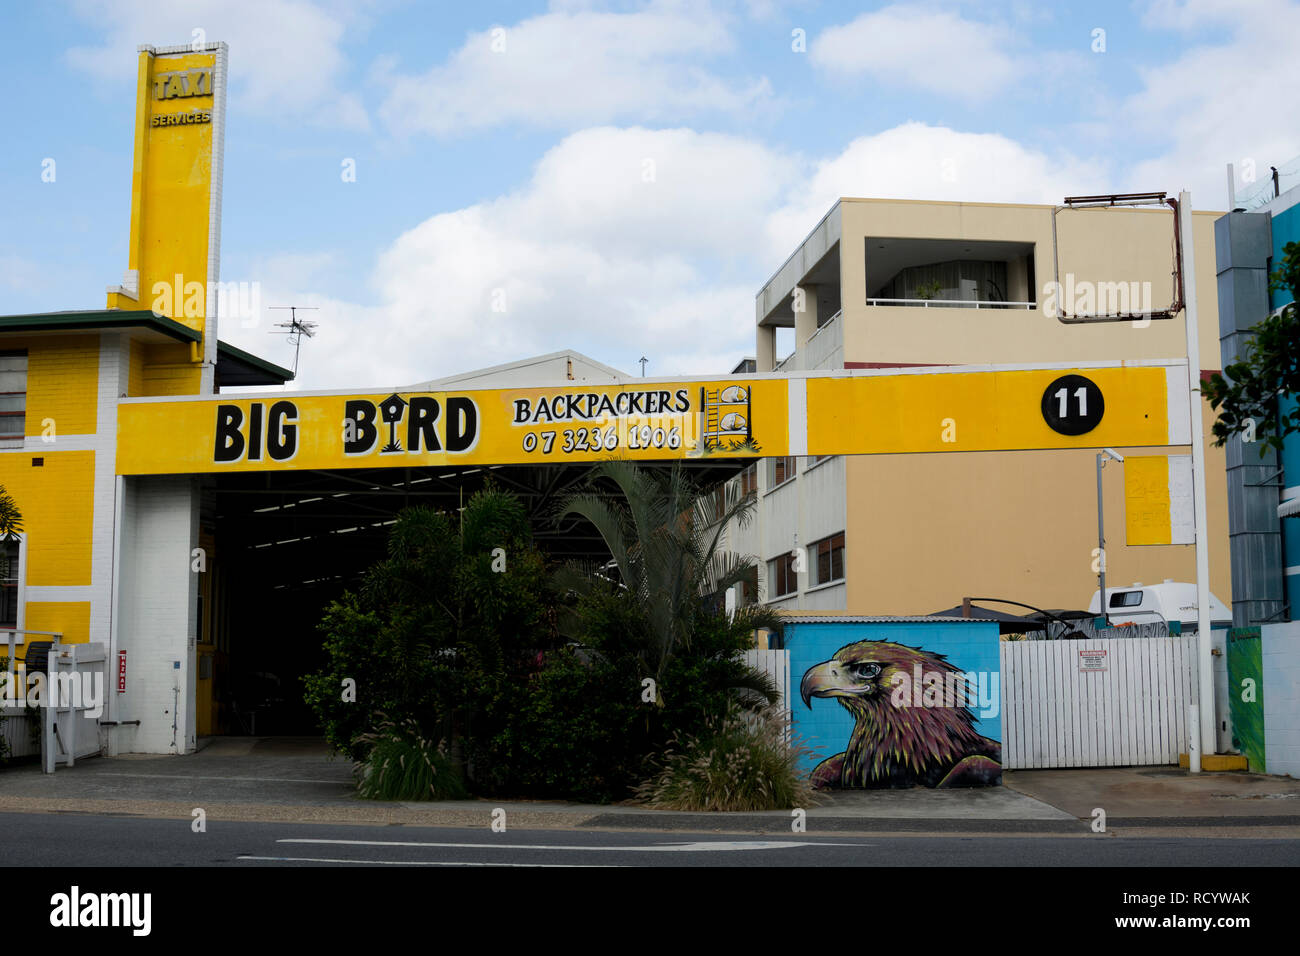 Big Bird backpackers, Brisbane, Queensland, Australia Stock Photo